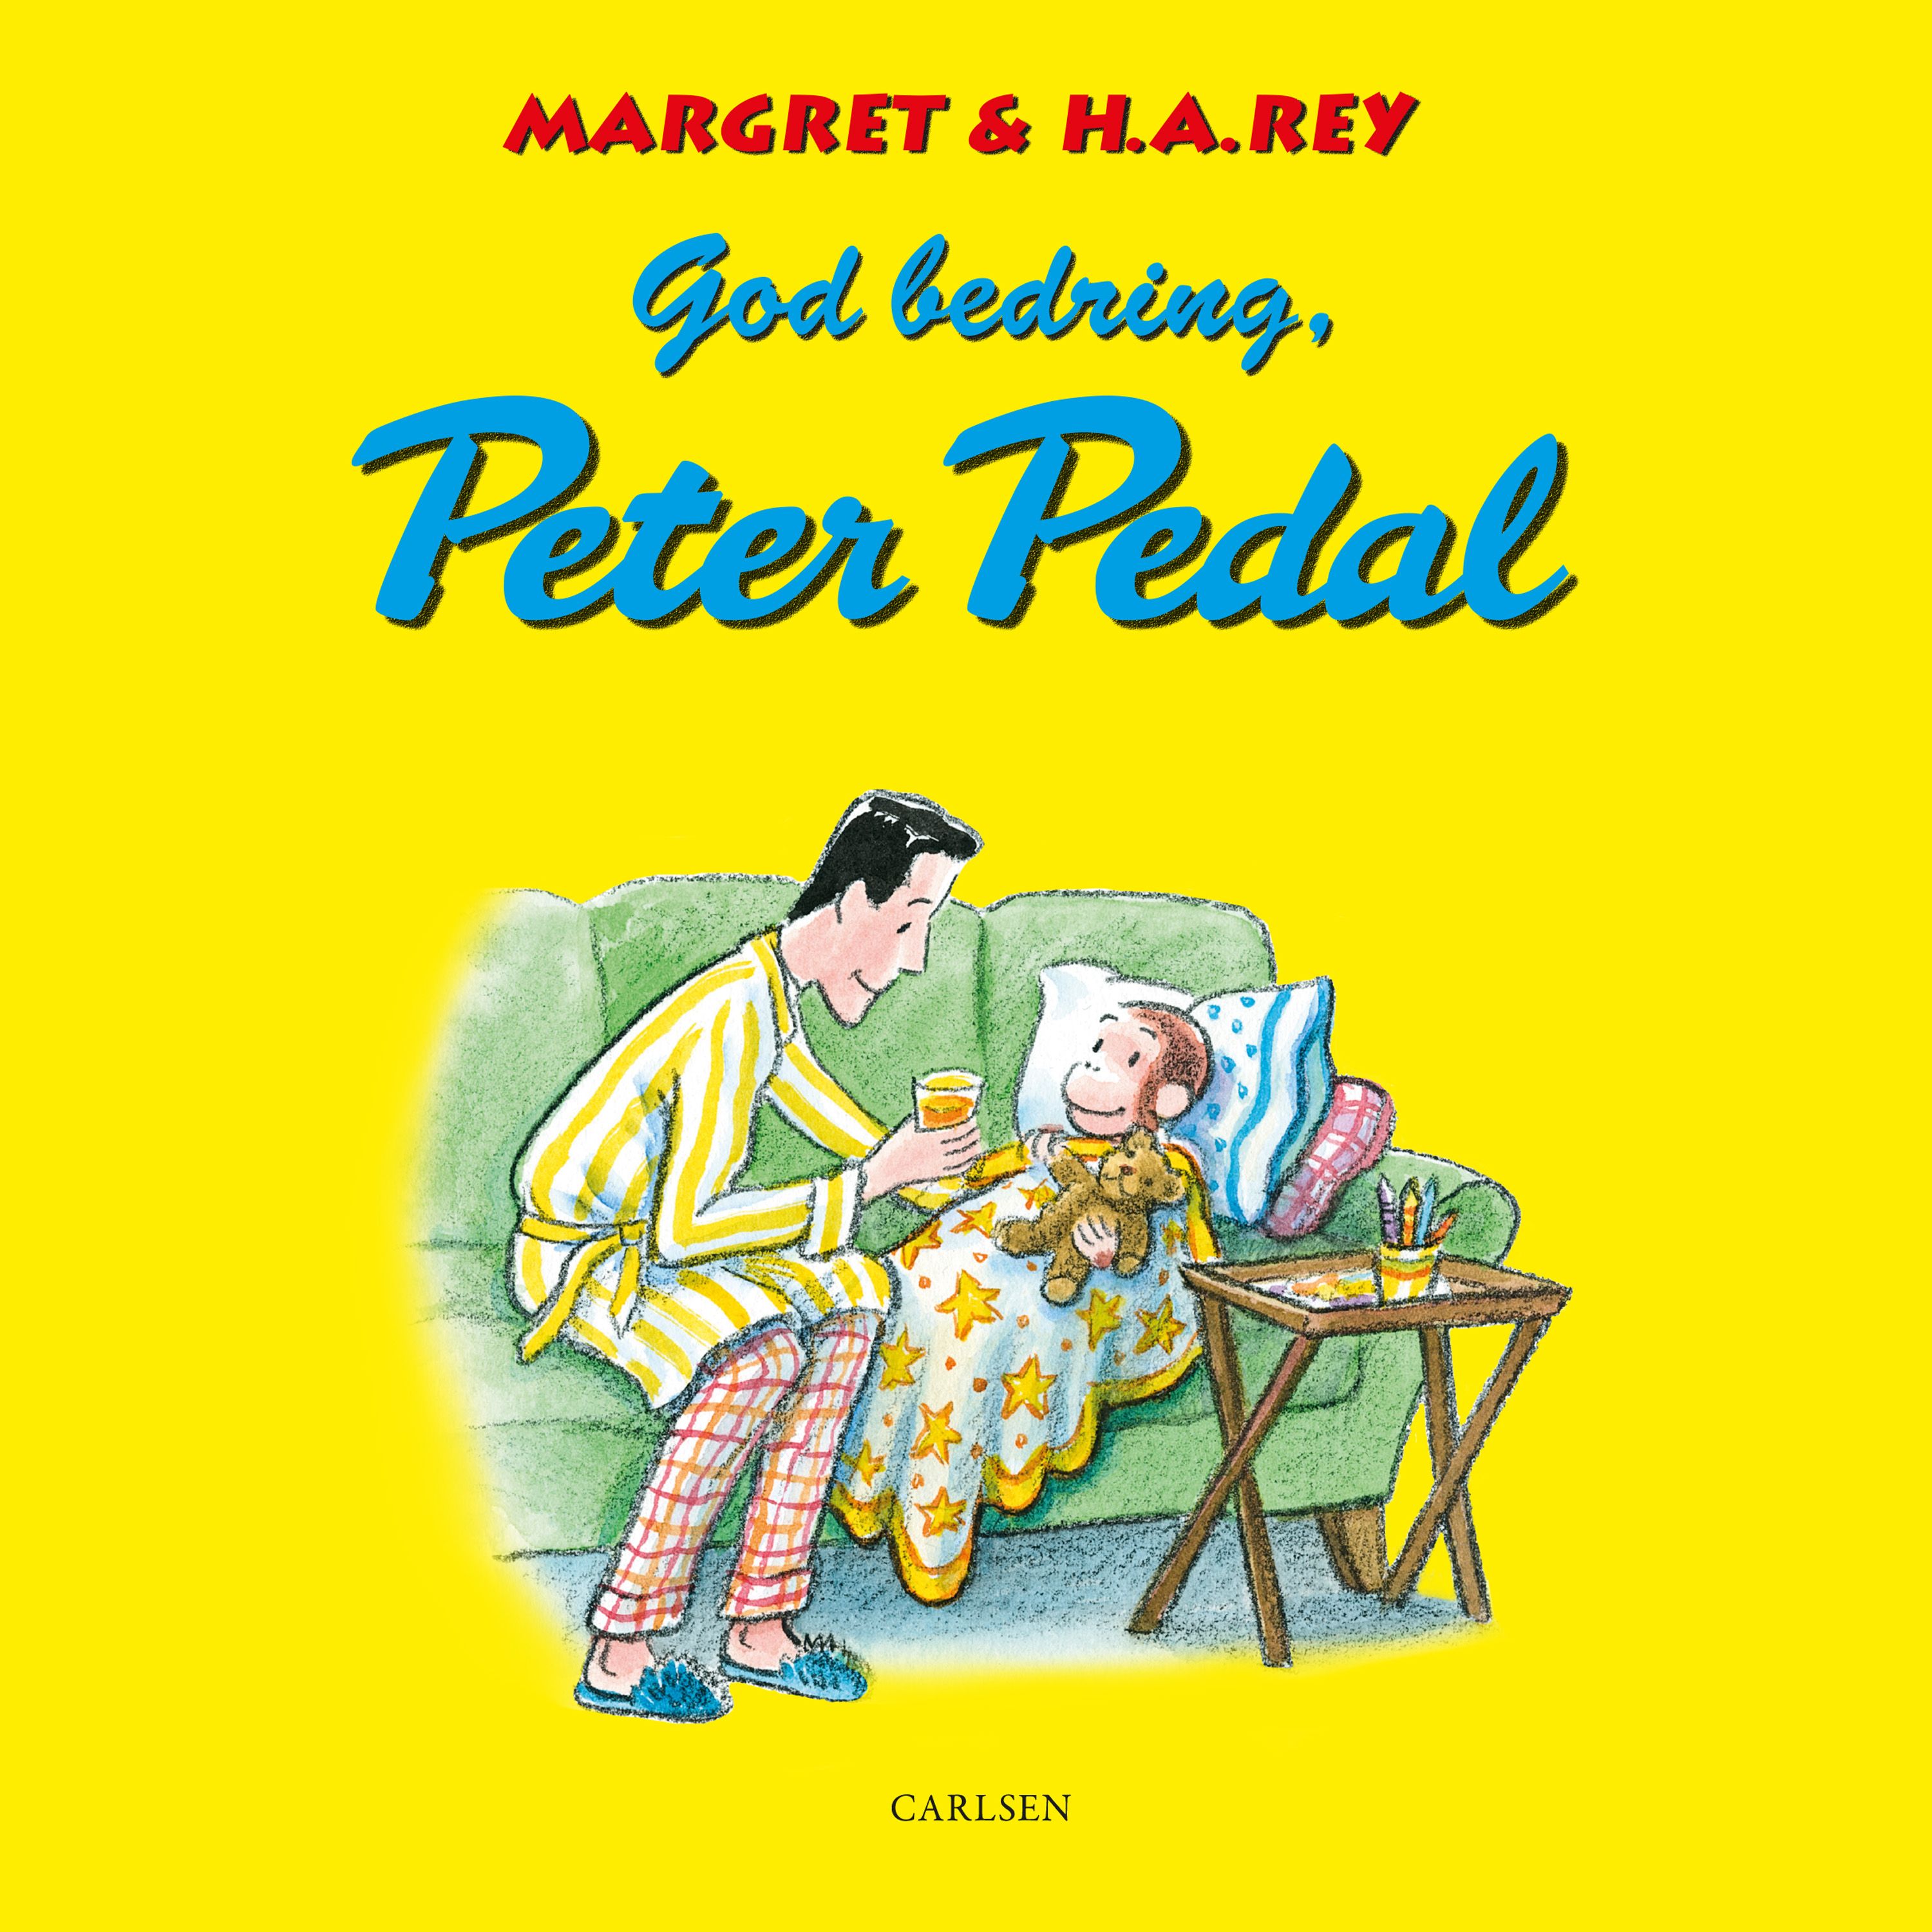 God bedring, Peter Pedal, lydbog af H. A. Rey